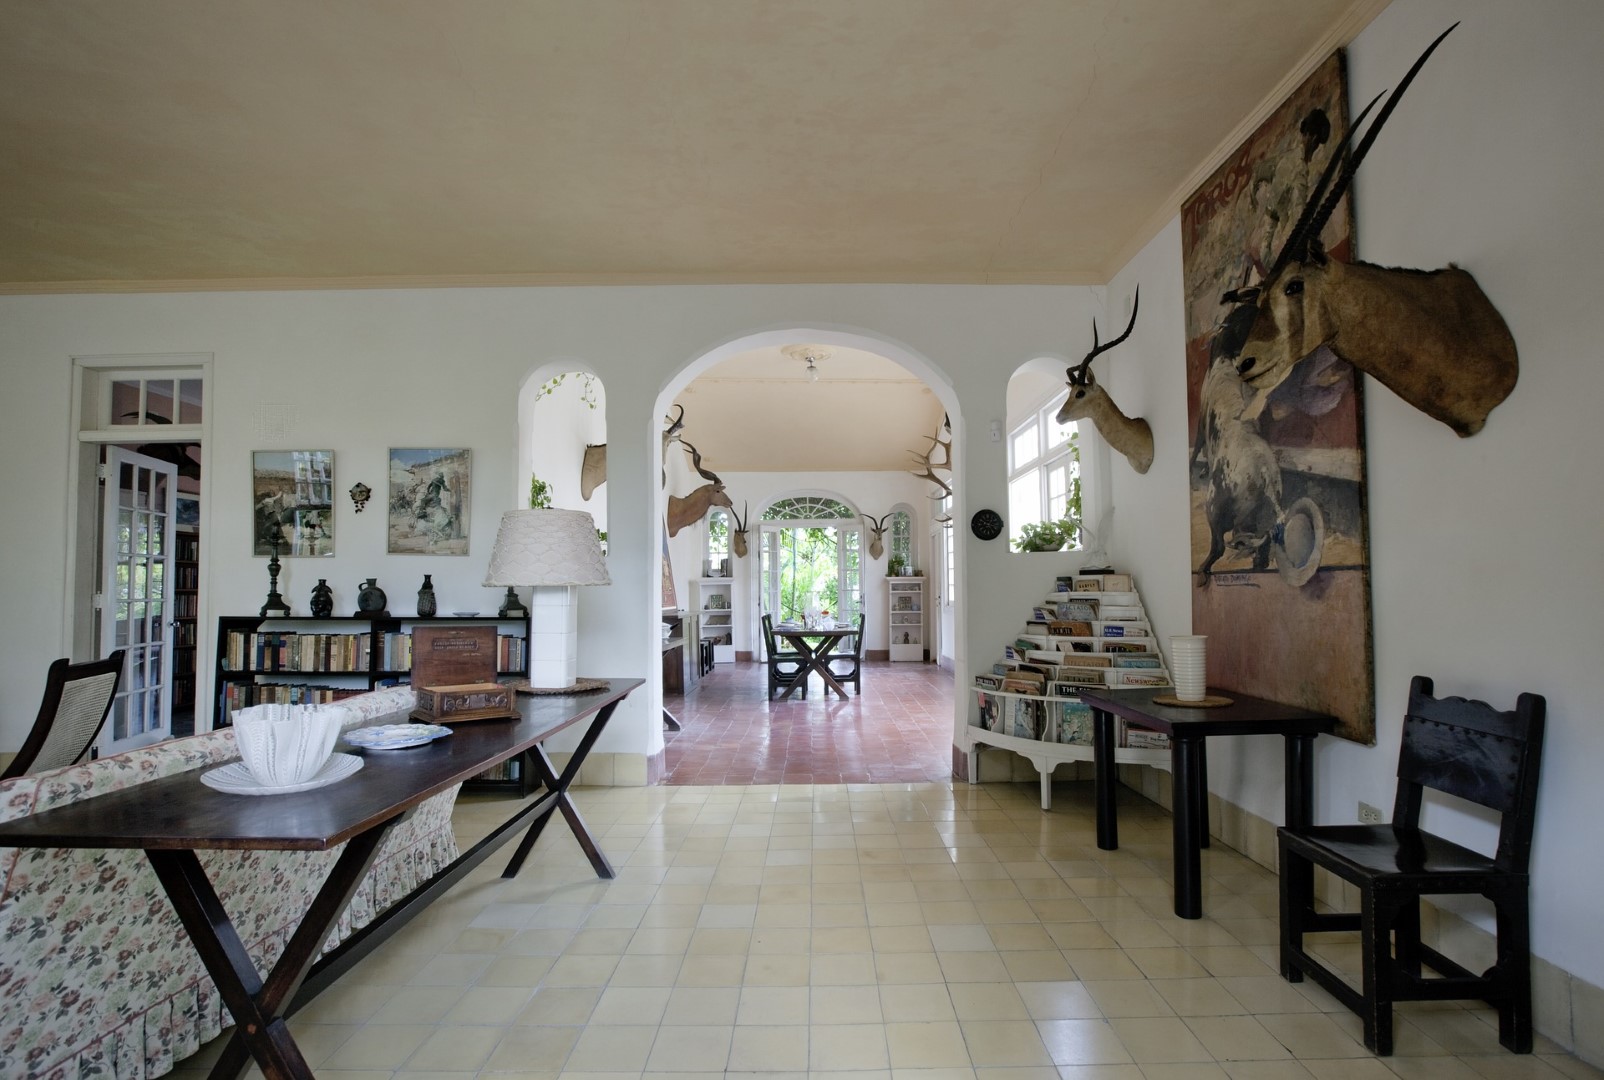 Finca Vigia was Ernest Hemingway's old home in Havana